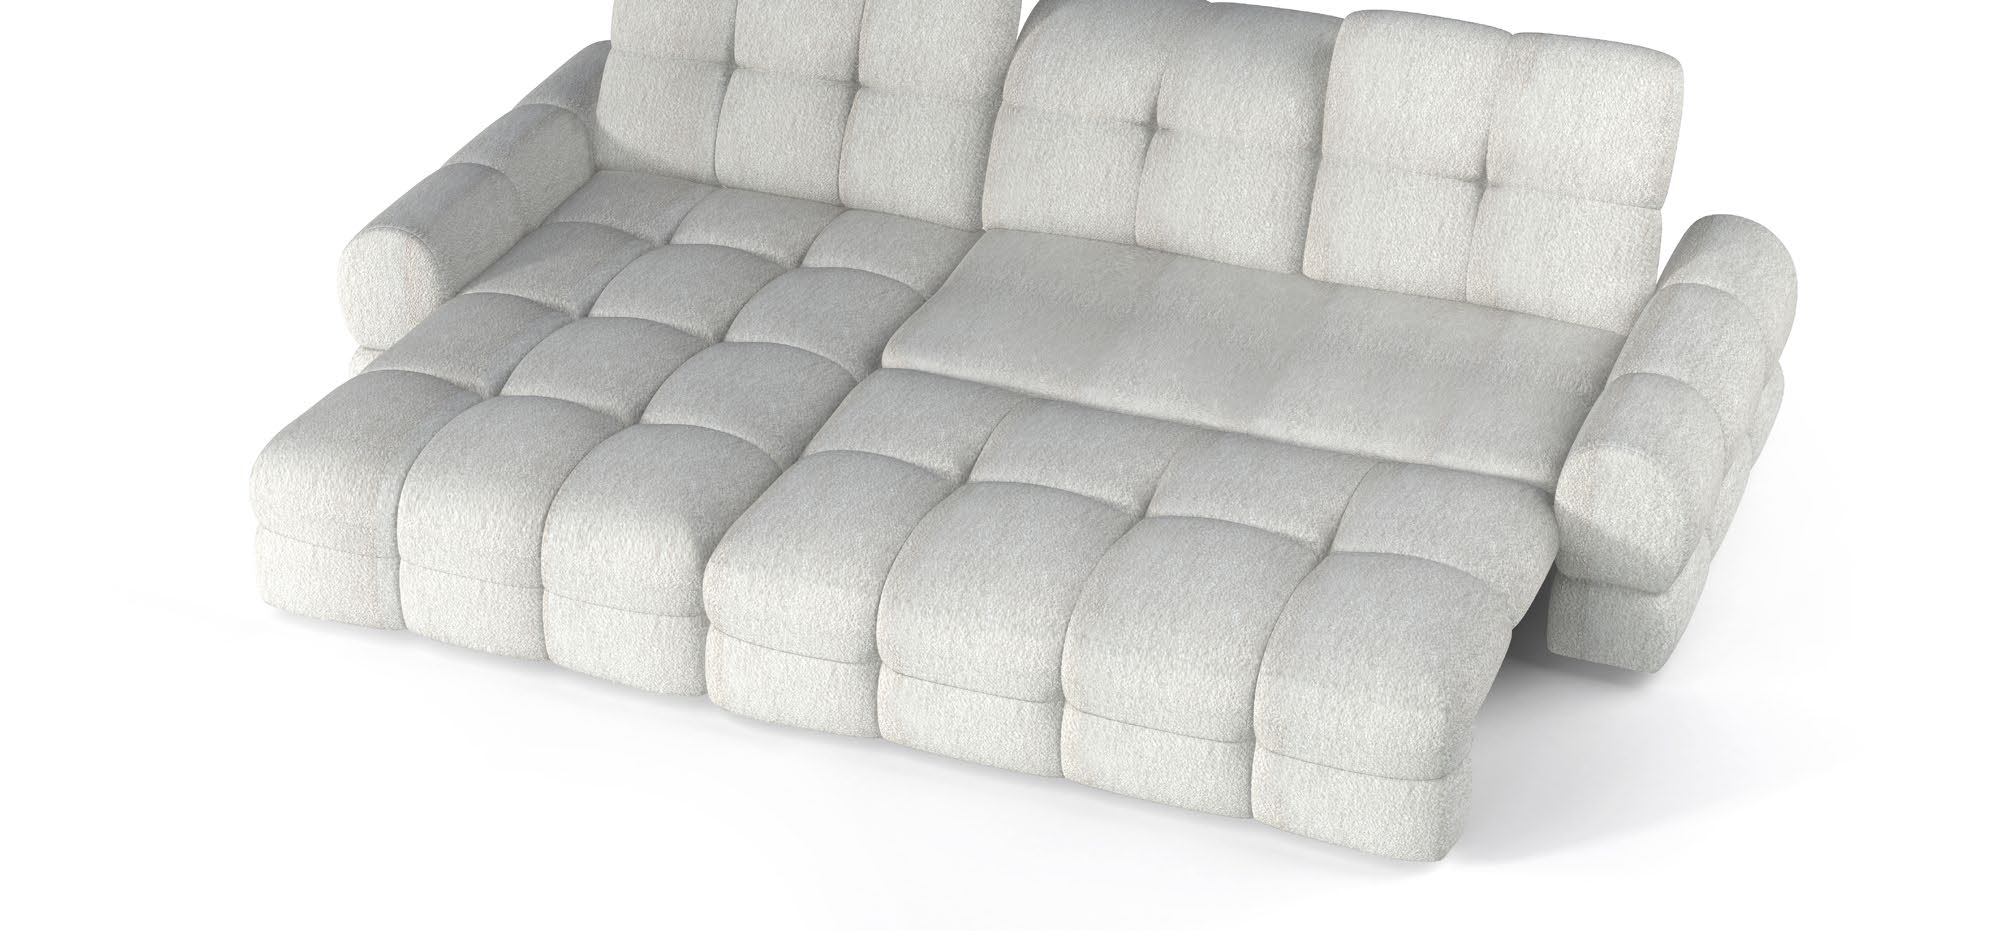 Sofá cama esquinero con asiento eléctrico - TOLLO MINI